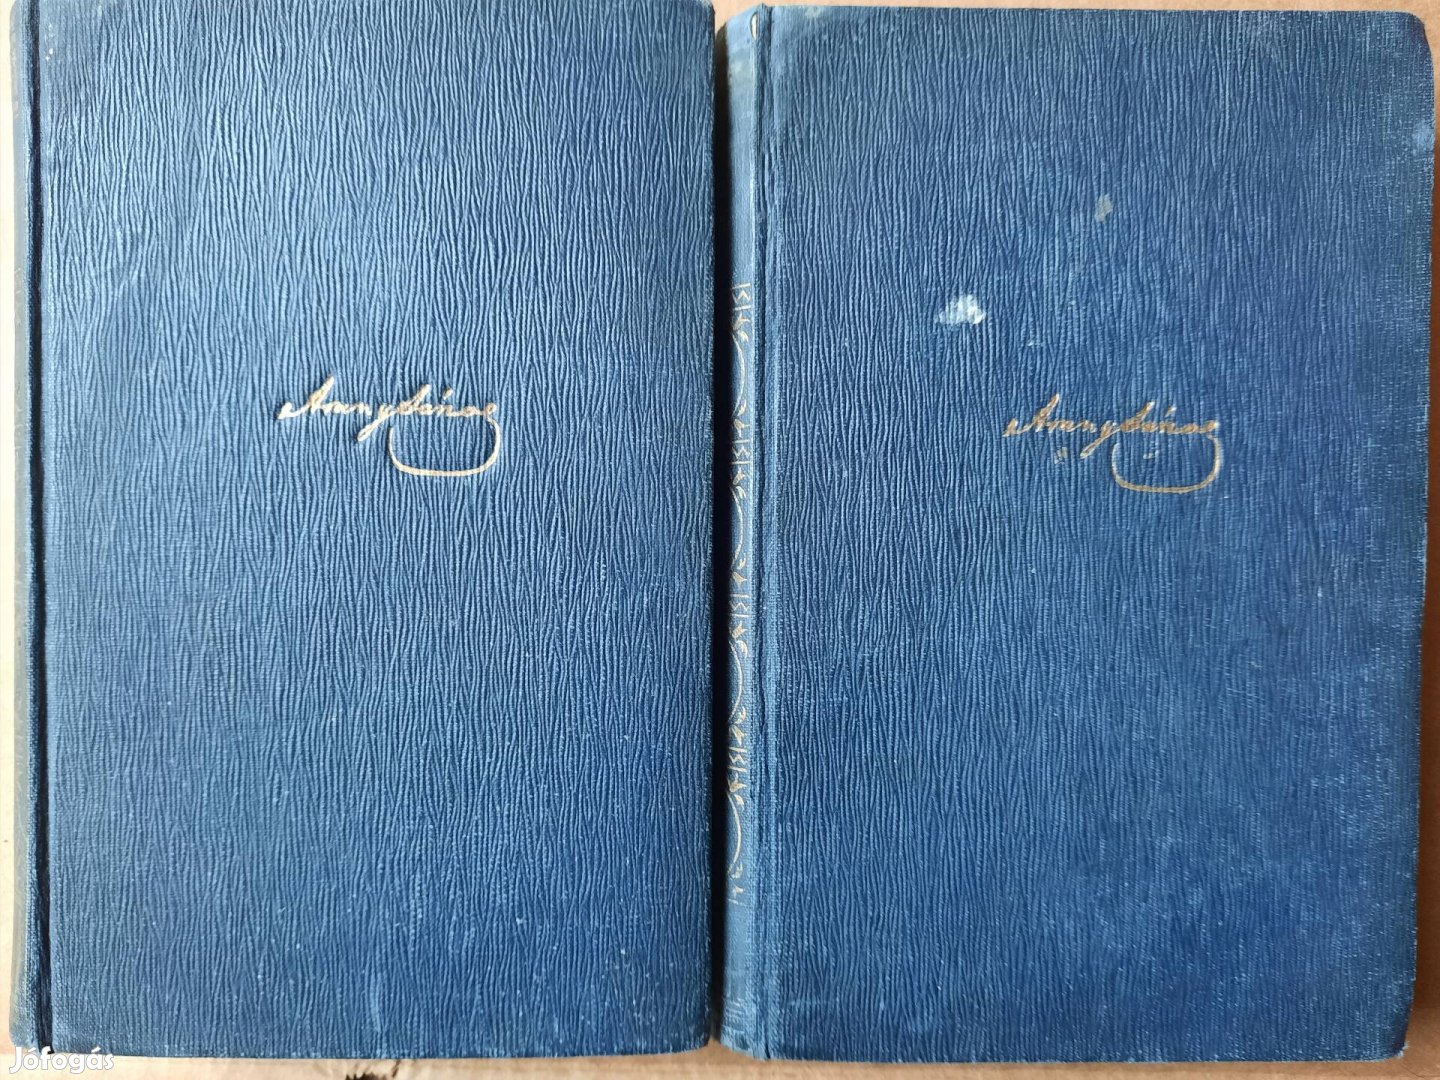 Arany János munkái című 2 kötetes mű eladó 